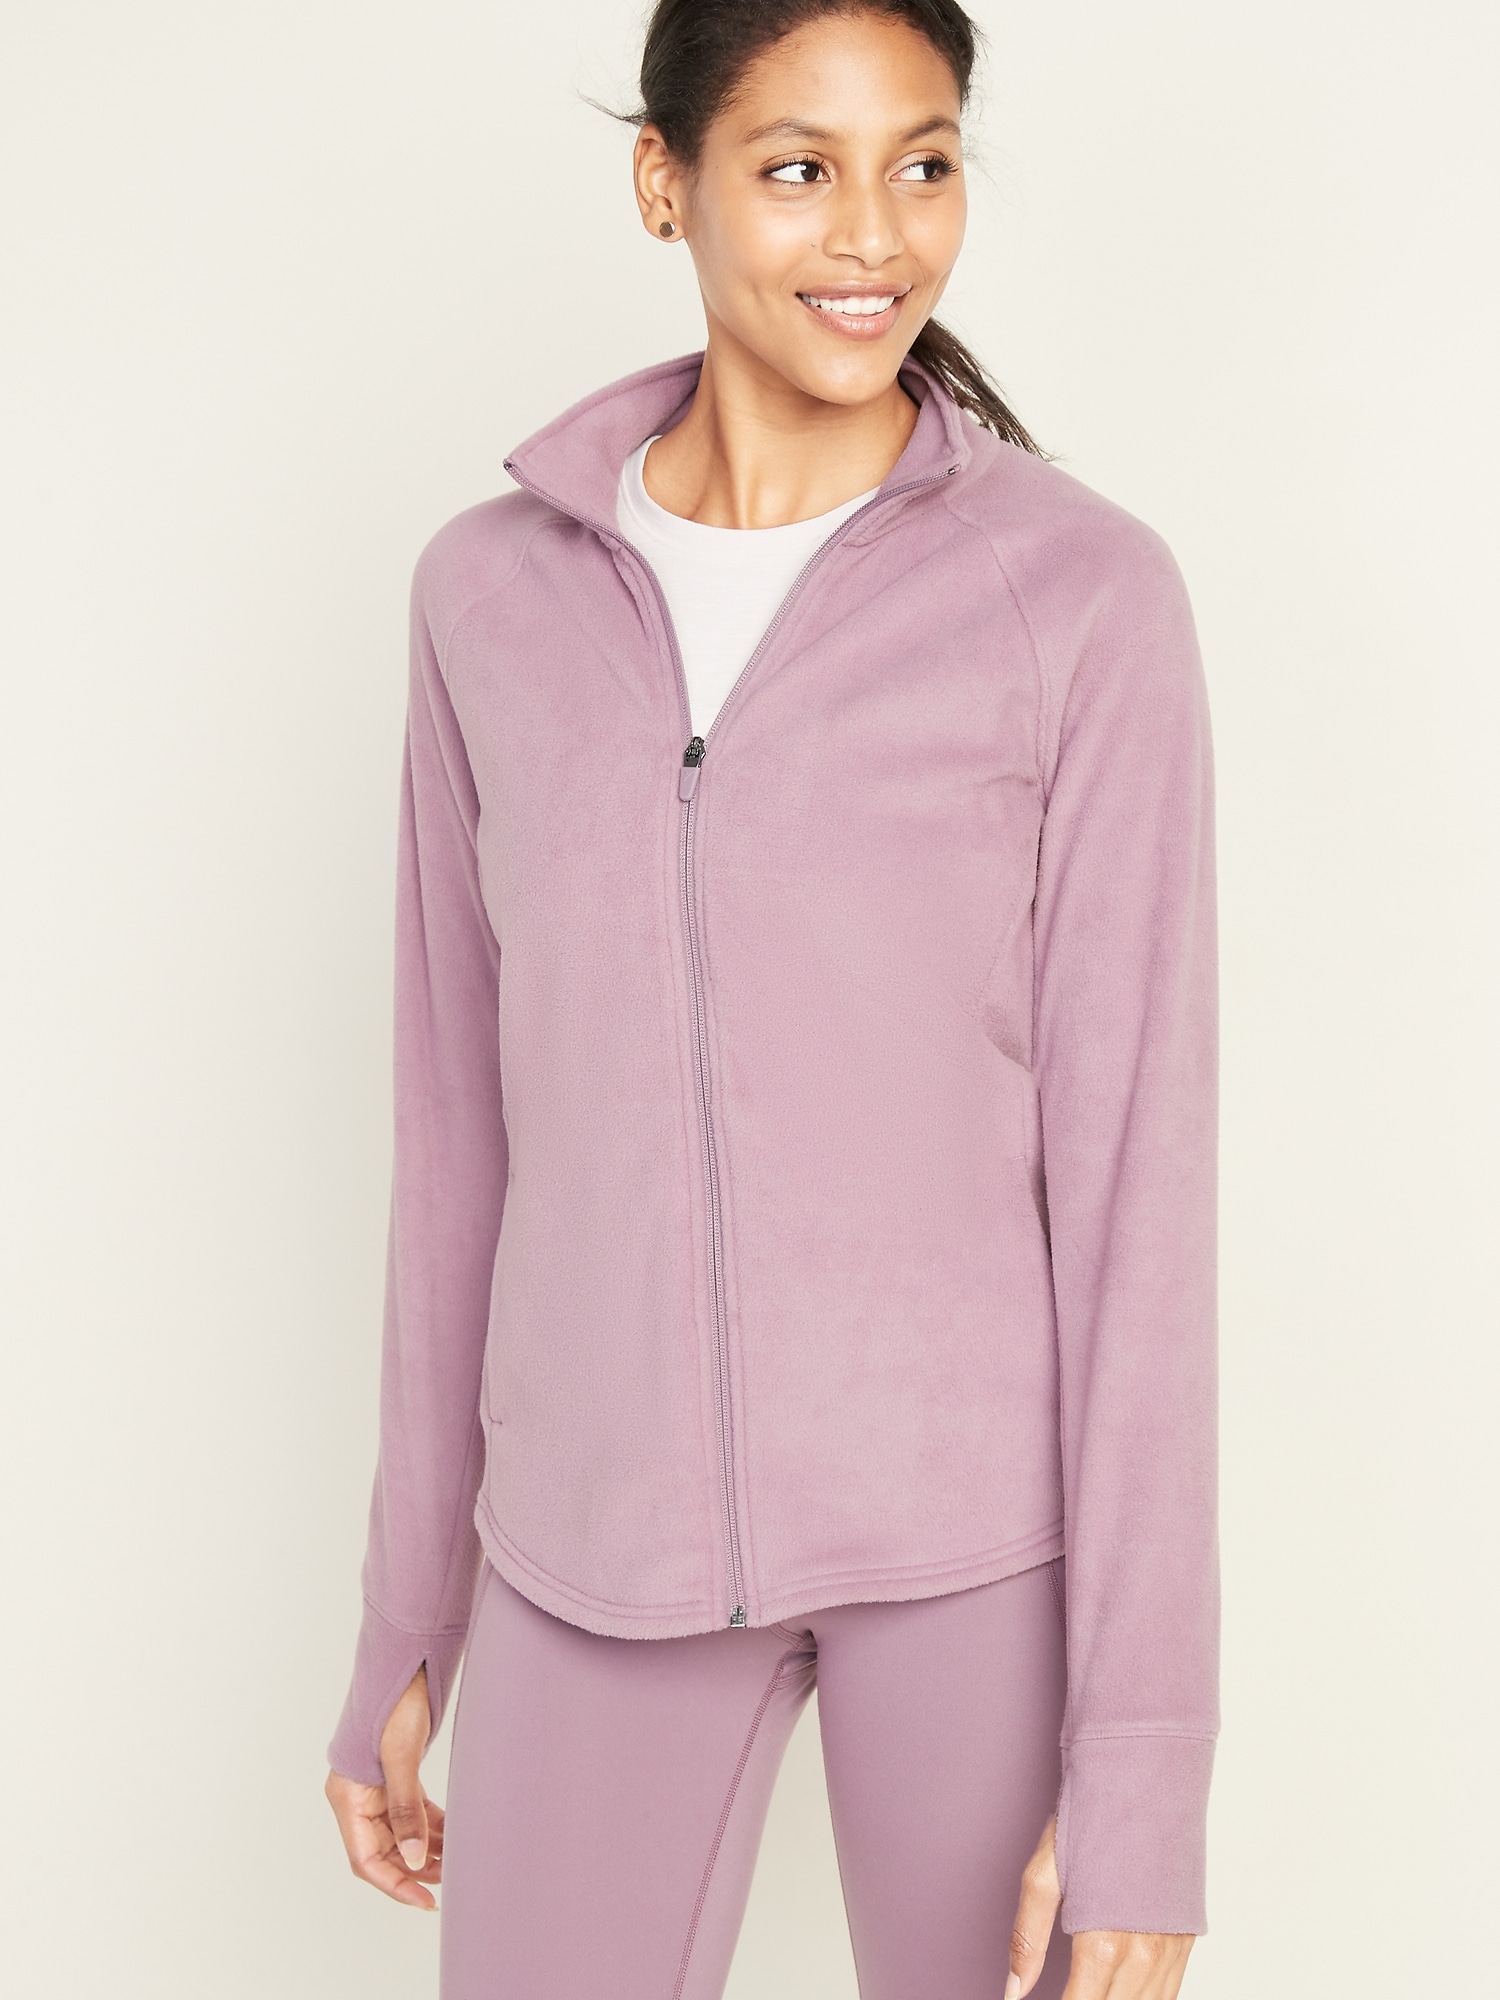 Women/'s Plush Fleece Jacket Warm Light Weight Zip Pockets Pink Medium M Only